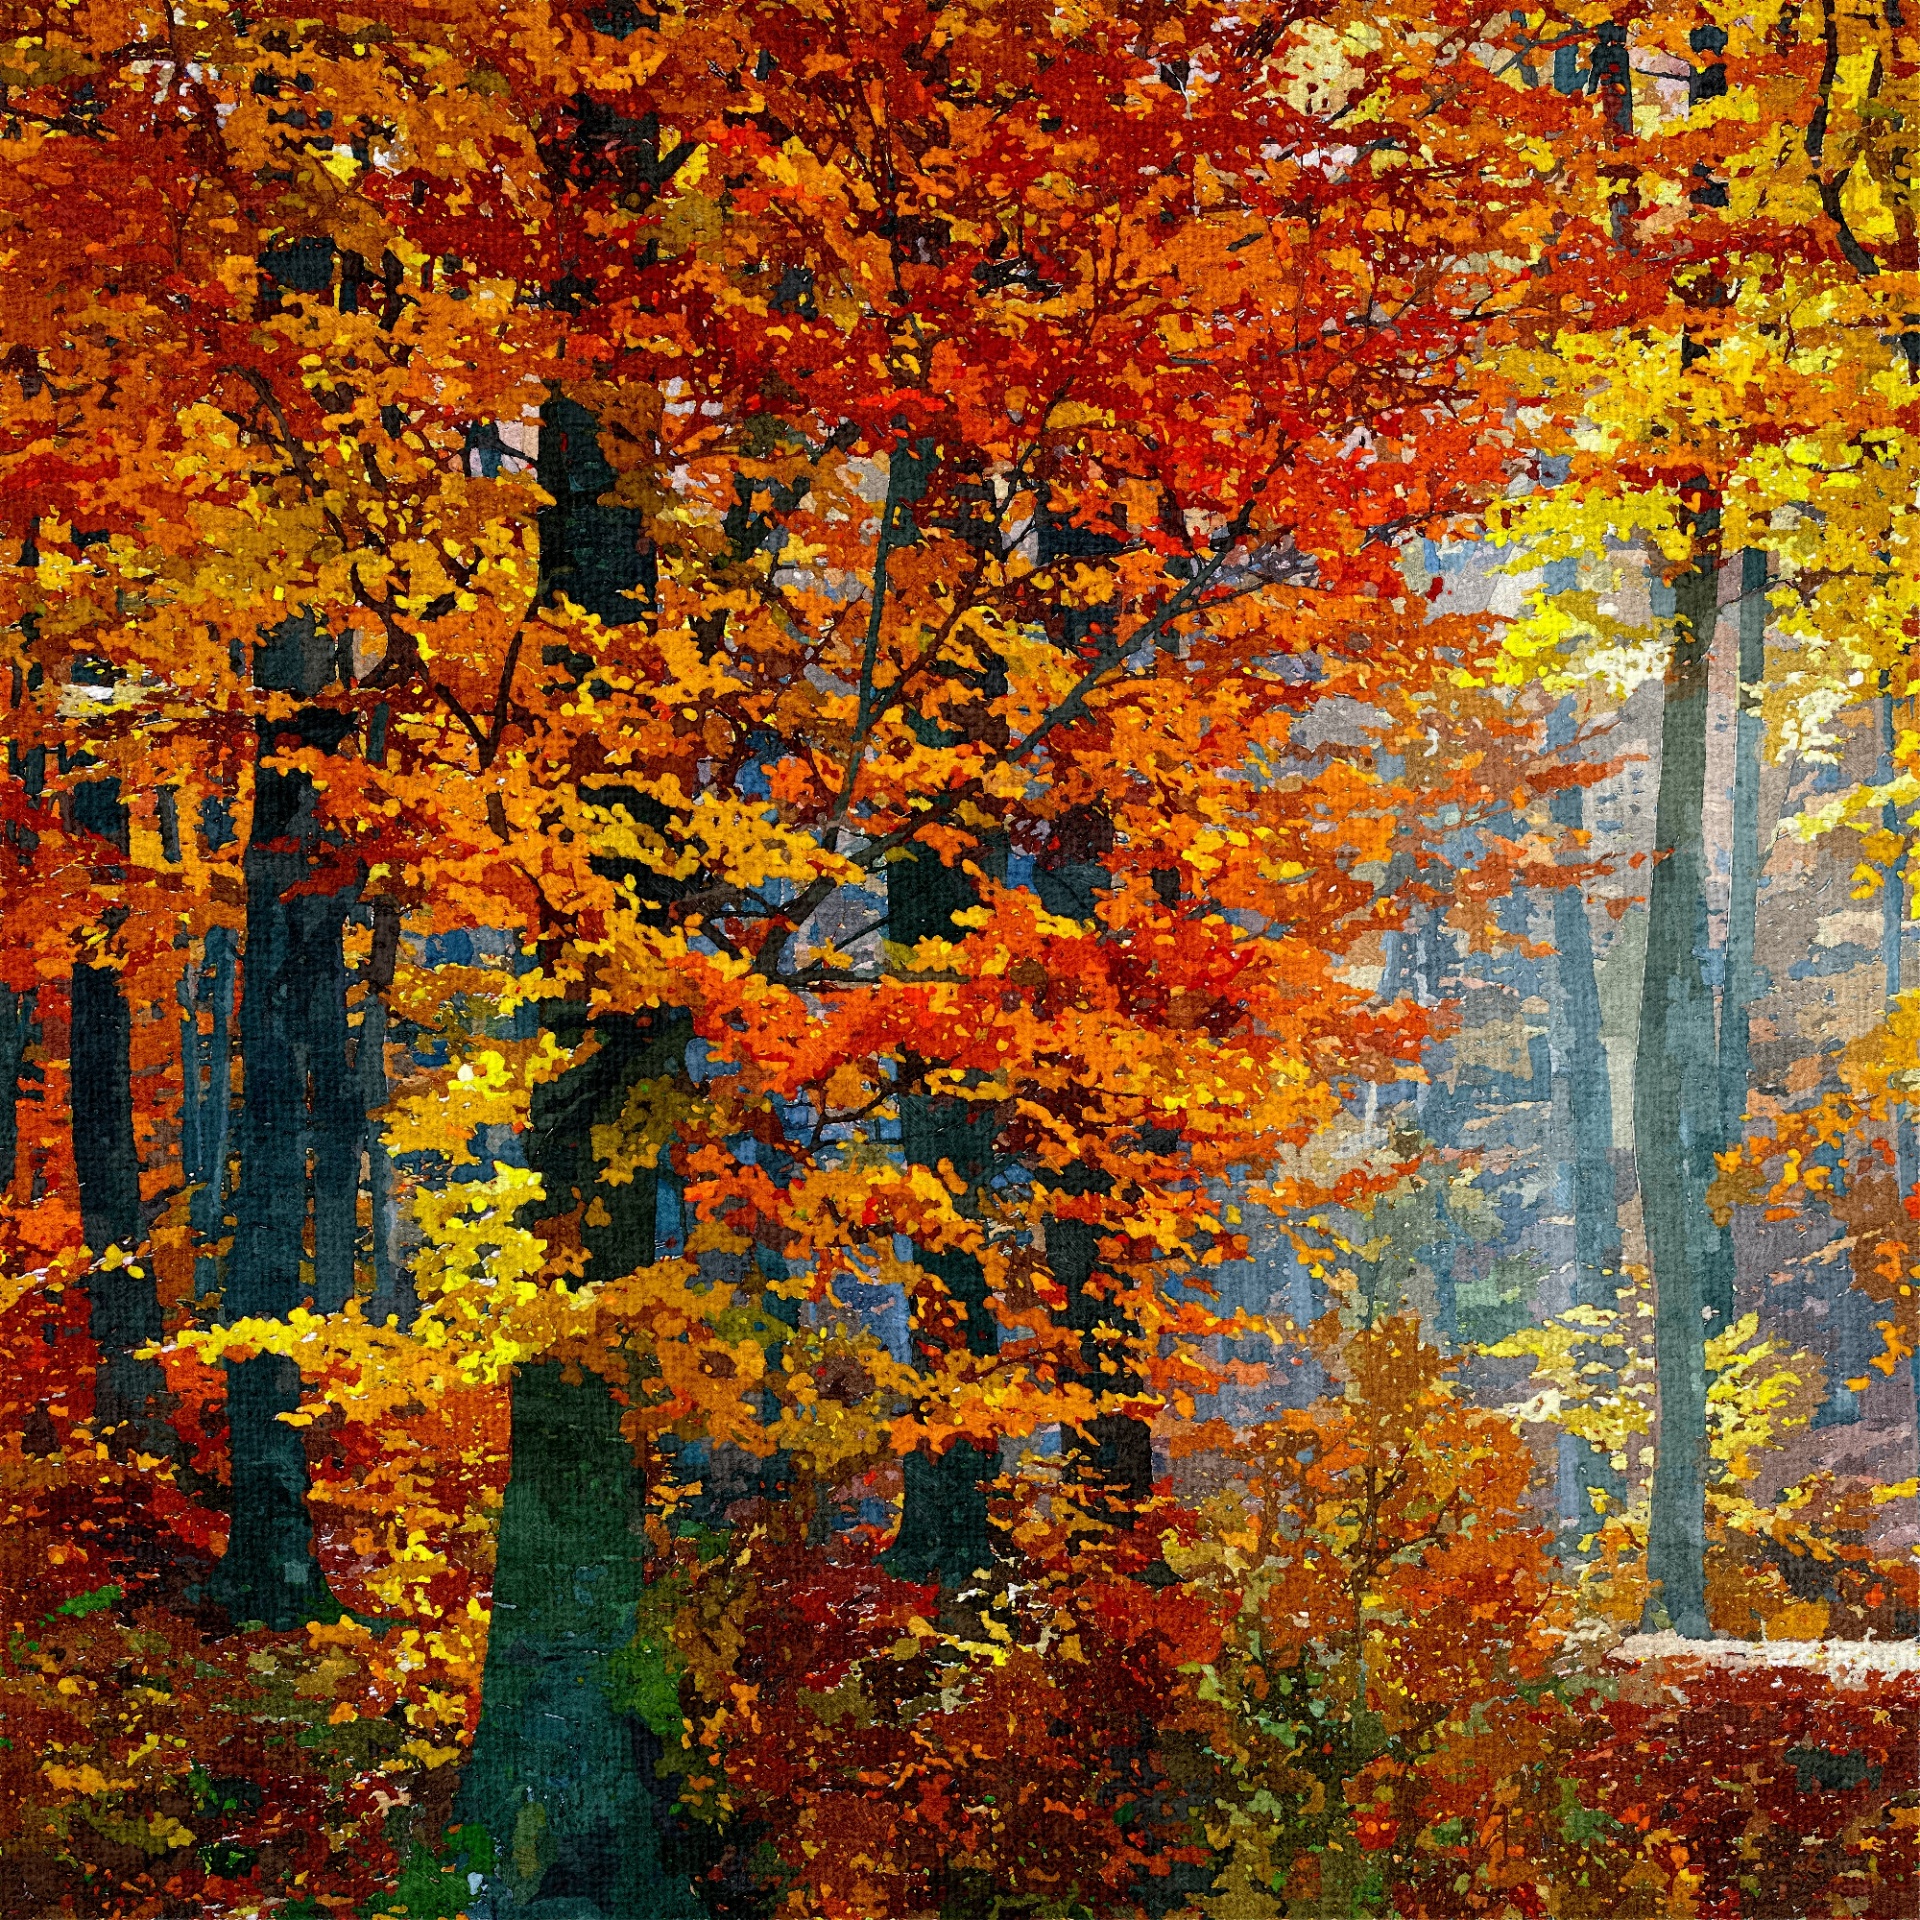 Î‘Ï€Î¿Ï„Î­Î»ÎµÏƒÎ¼Î± ÎµÎ¹ÎºÏŒÎ½Î±Ï‚ Î³Î¹Î± autumn painting